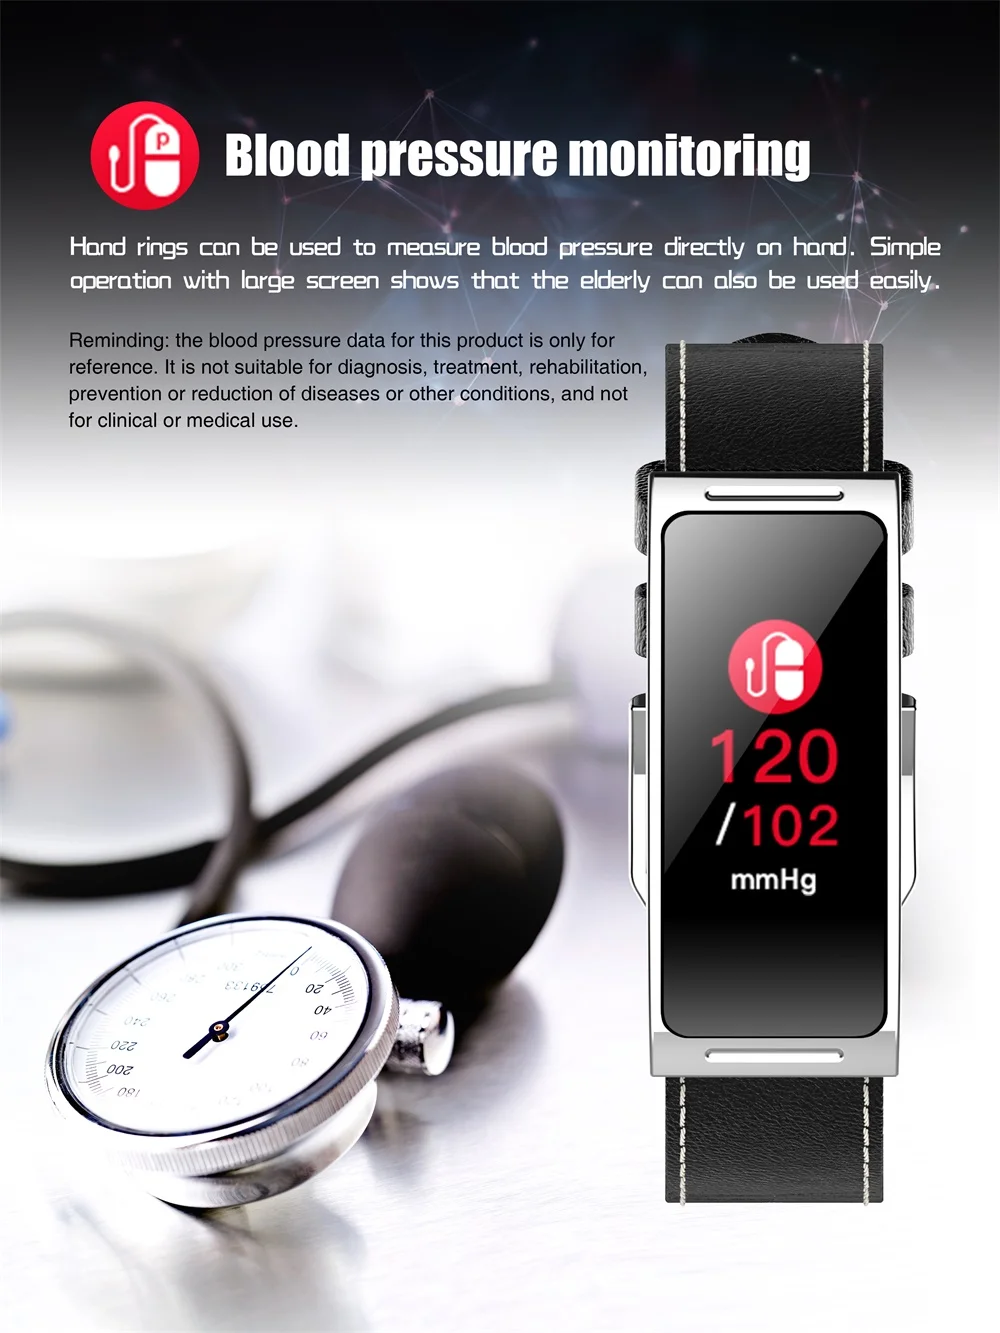 696 ZY58 умный Браслет цветной экран умный Браслет монитор сердечного ритма кровяное давление Meassure Шагомер Смарт-браслет для IOS